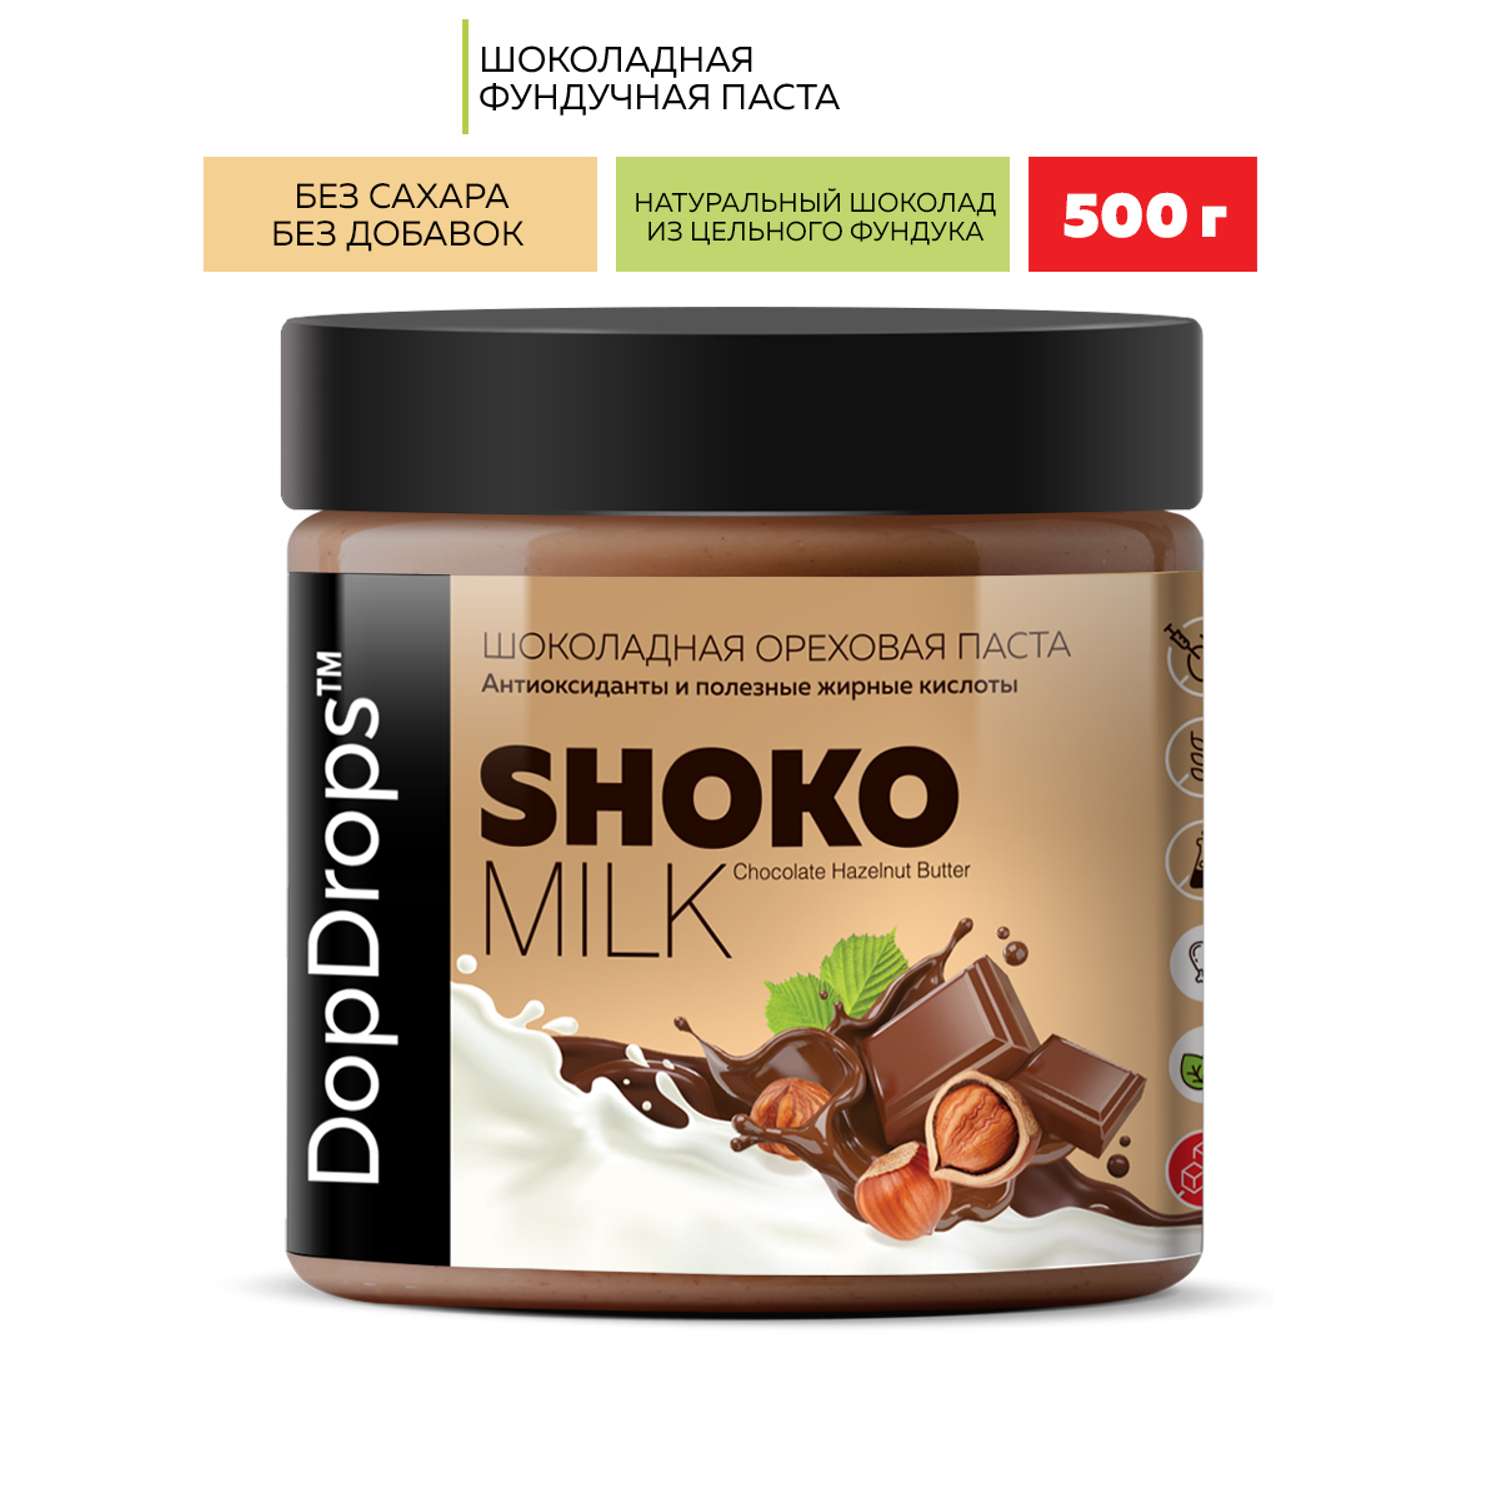 Шоколадная ореховая паста DopDrops фундучная с молочным шоколадом 500 г - фото 1